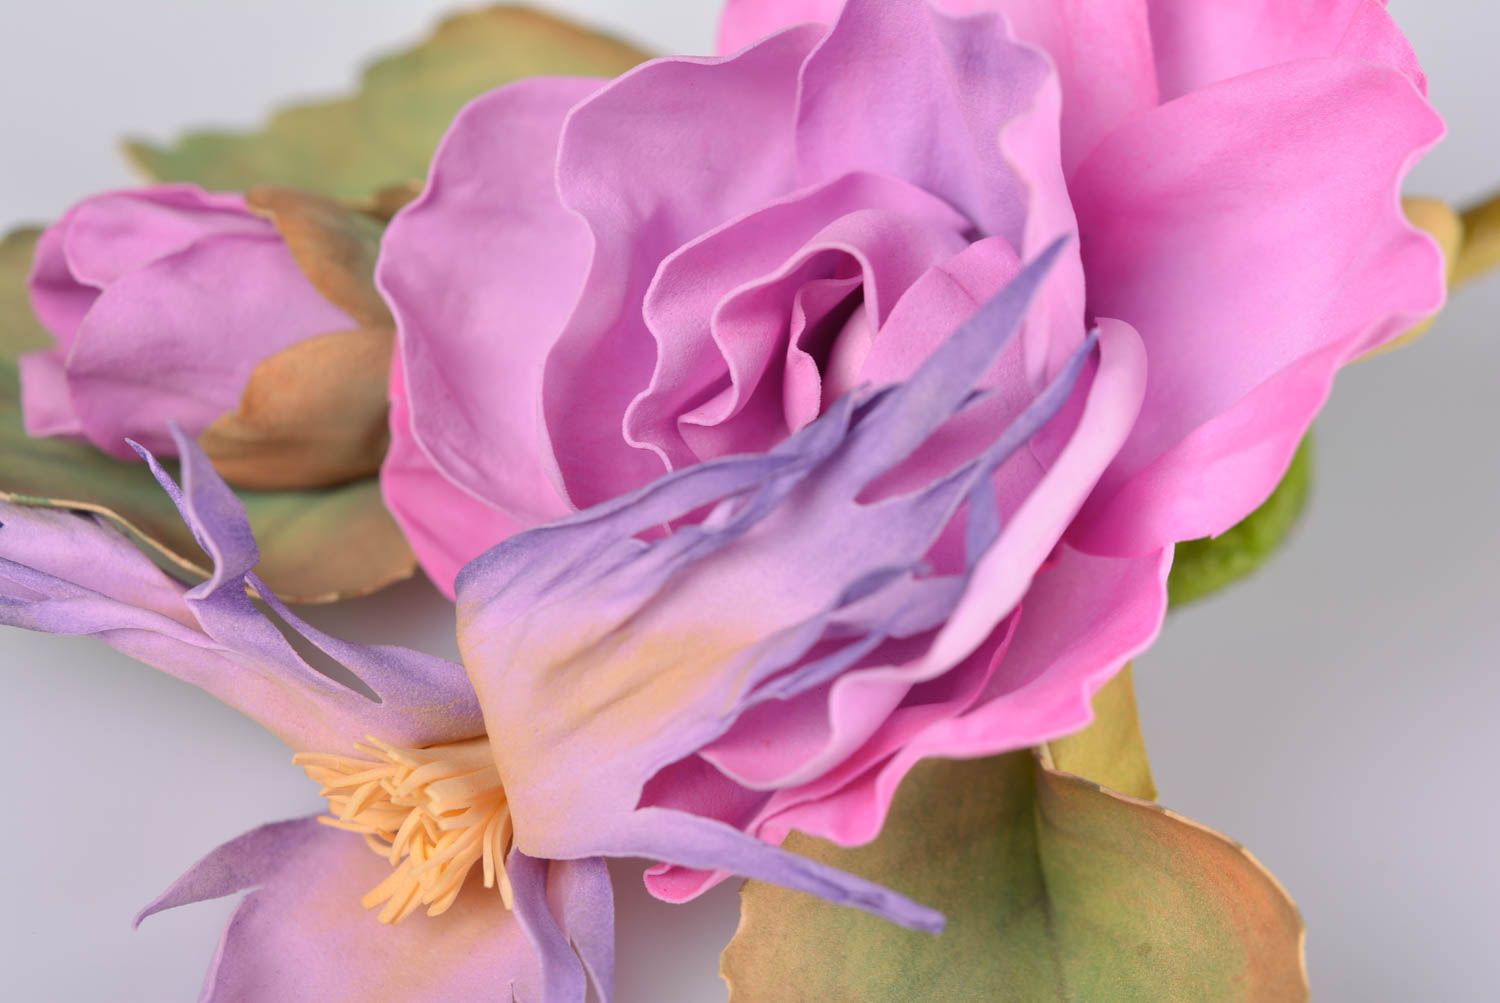 Брошь из фоамирана ручной работы красивая с цветами женская в розовых тонах фото 3